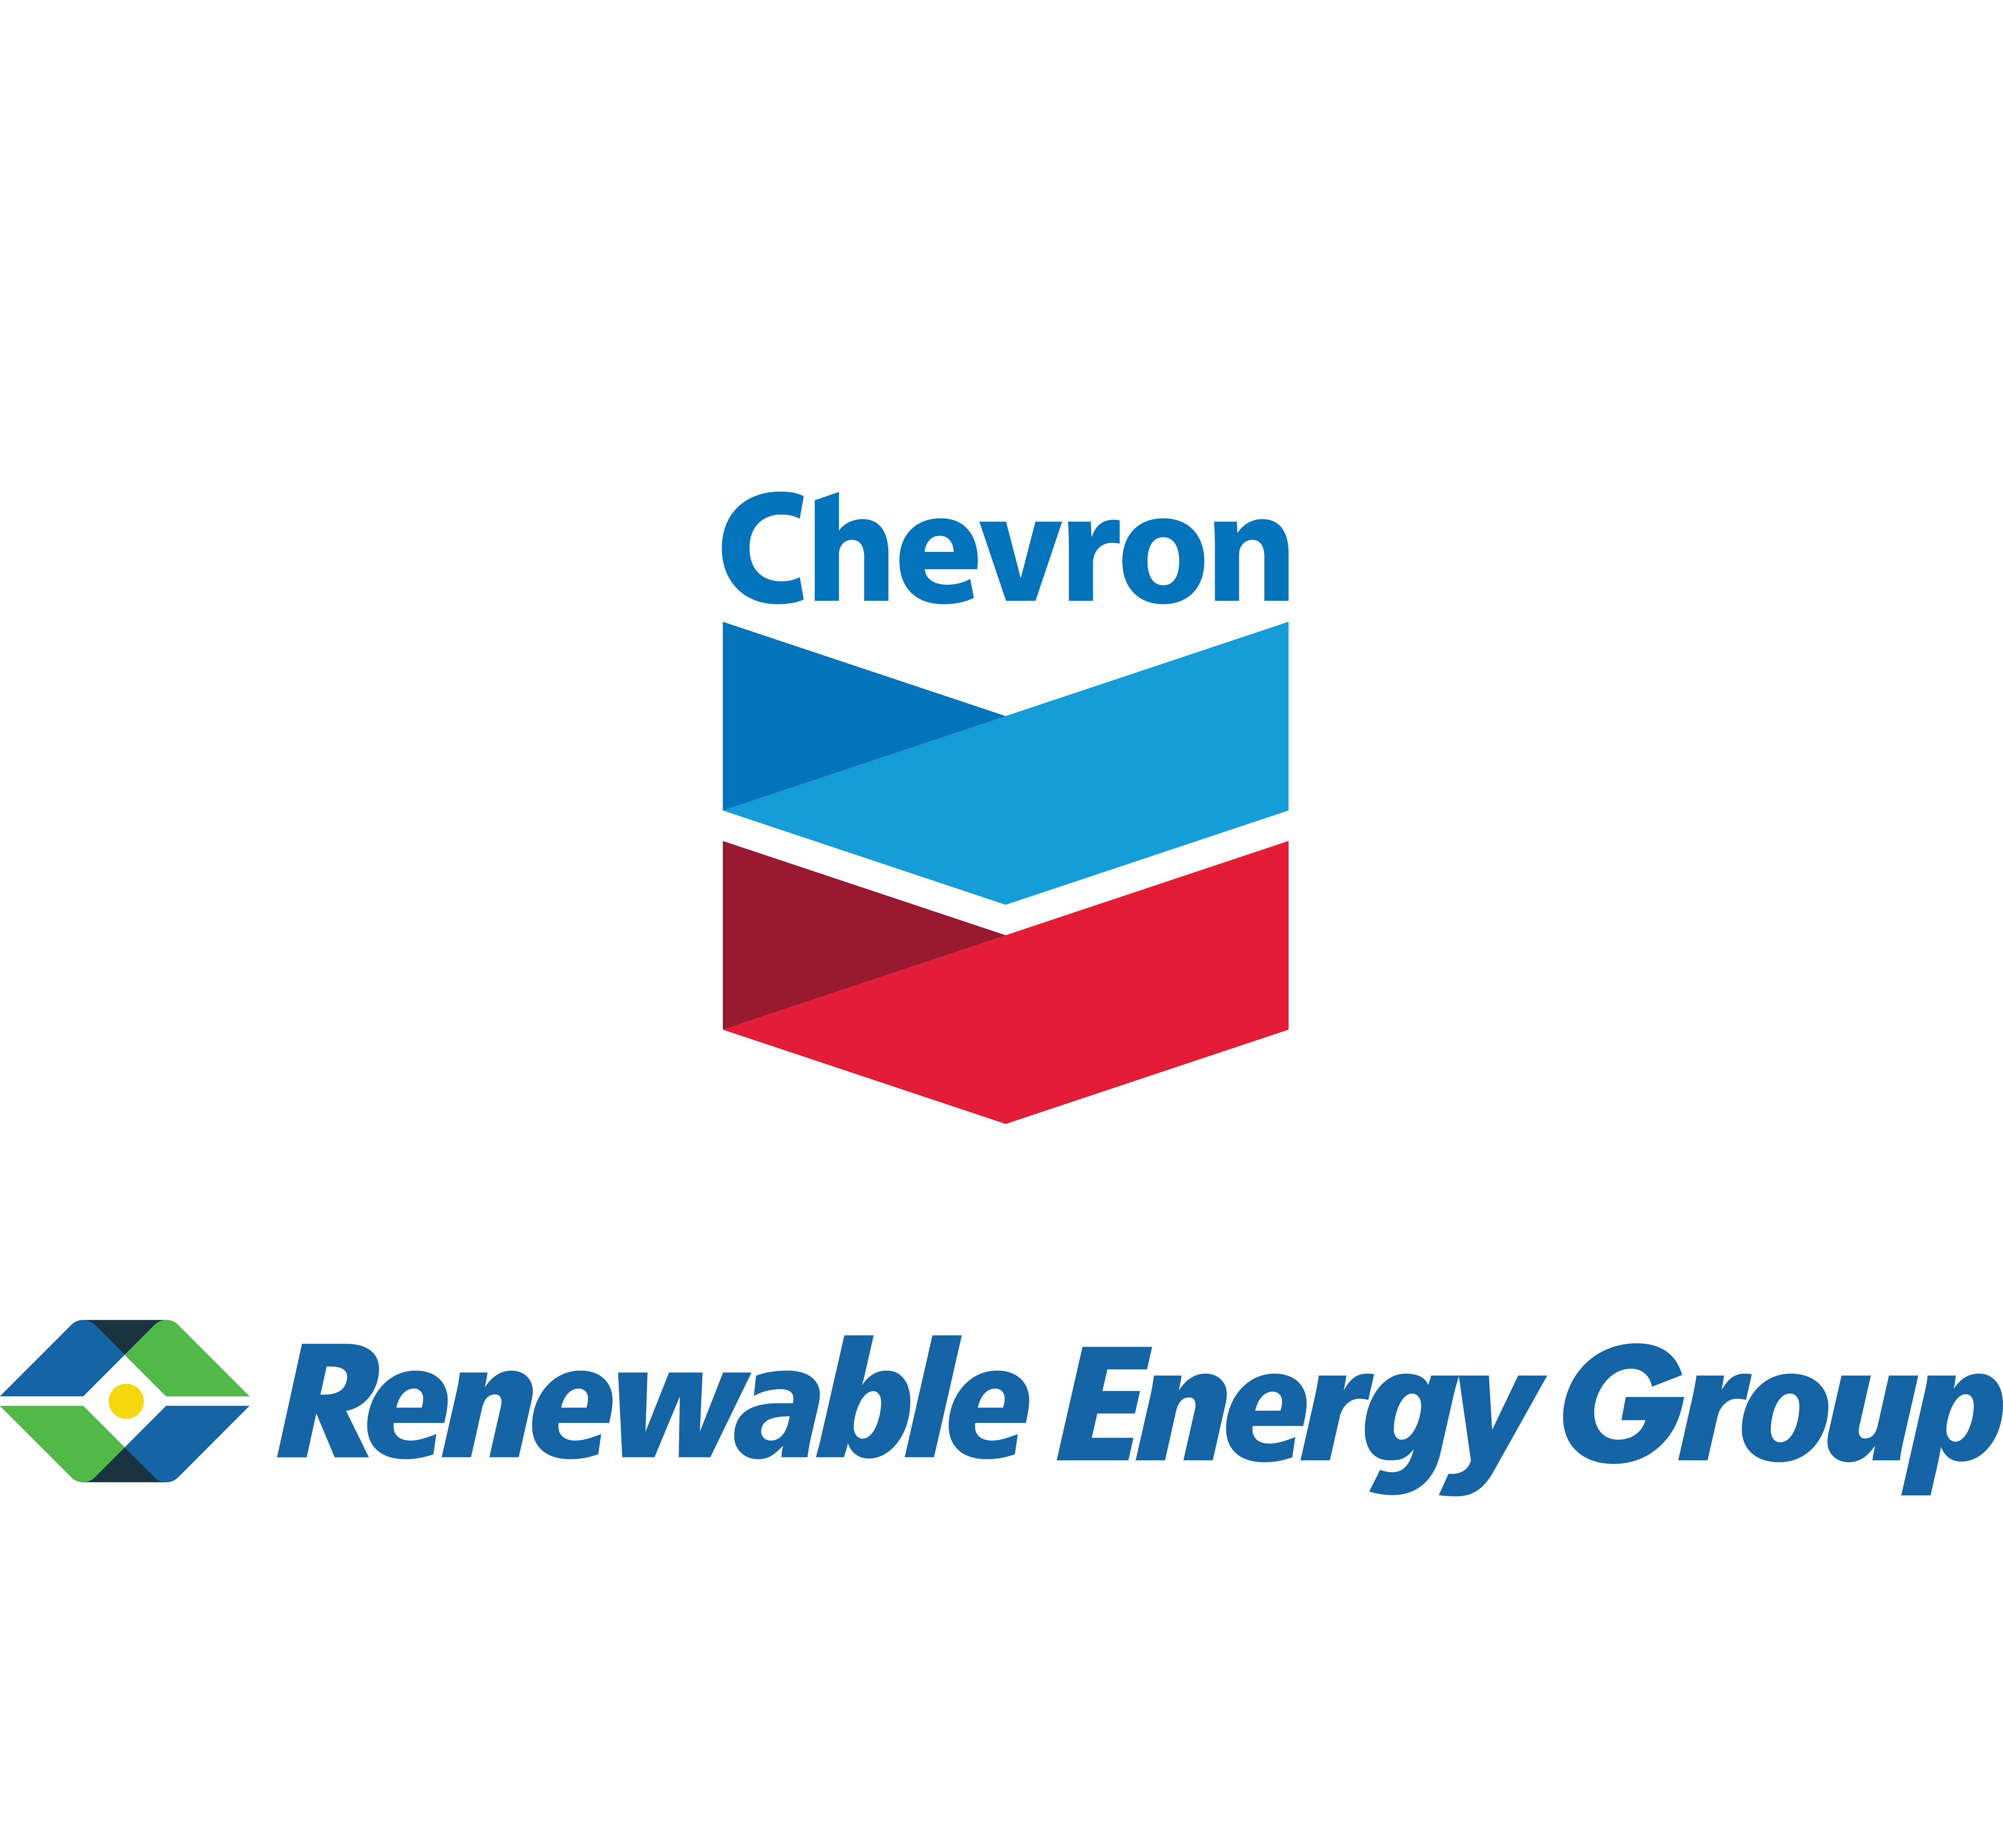 Chevron Renewable Energy Group (Tier 3)